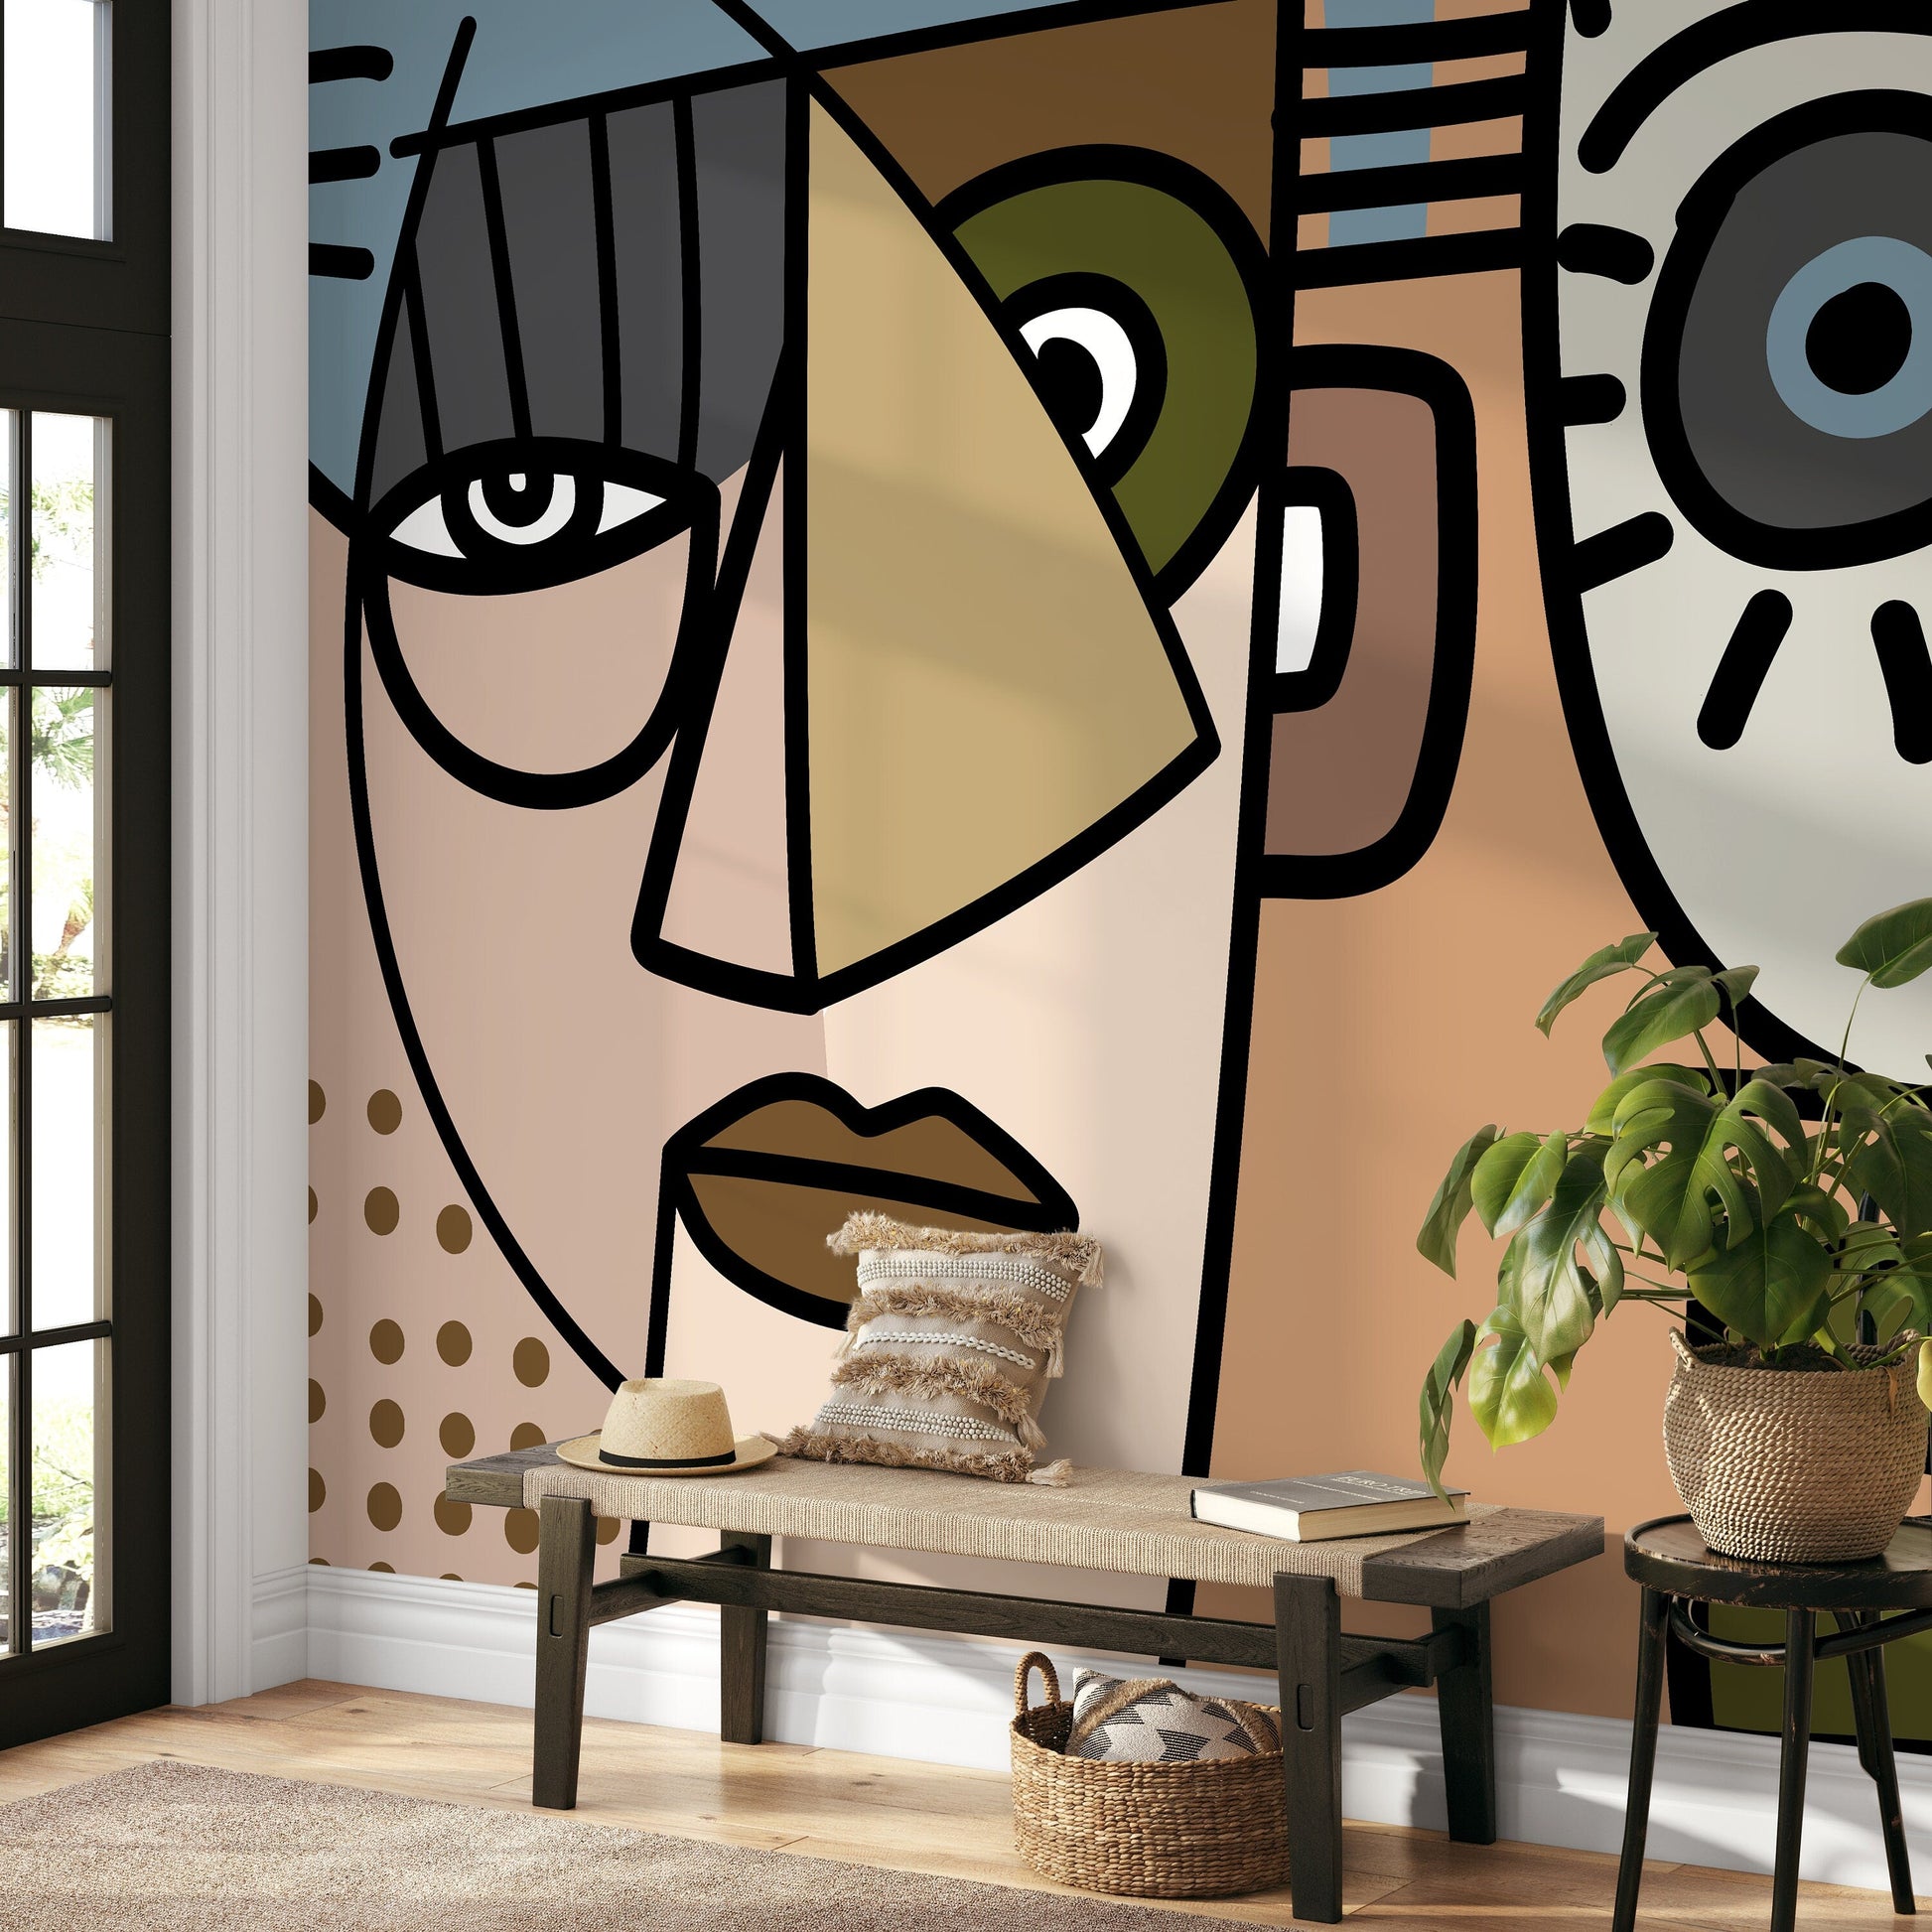 Cubism Art Wallpaper Abstract Modern Mural Peel and Stick Wallpaper Home Decor - D567